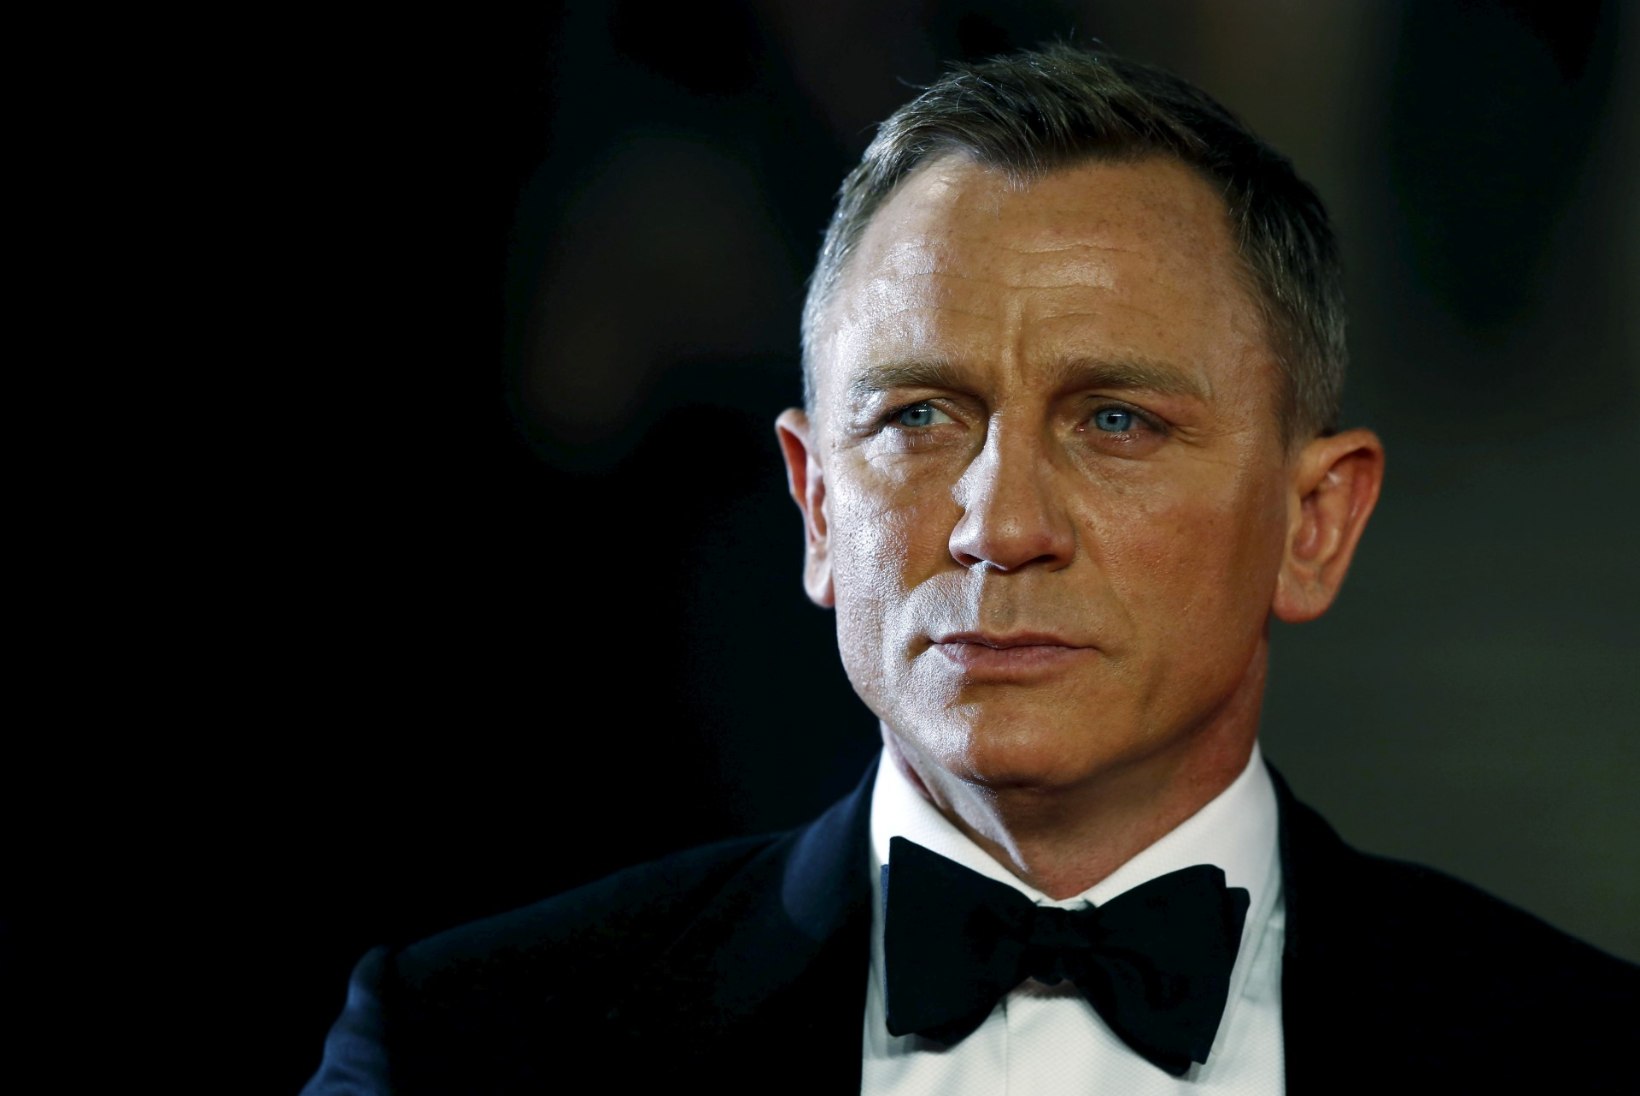 Järgmises Bondi filmis saab esmakordselt peaosa mustanahaline näitleja?